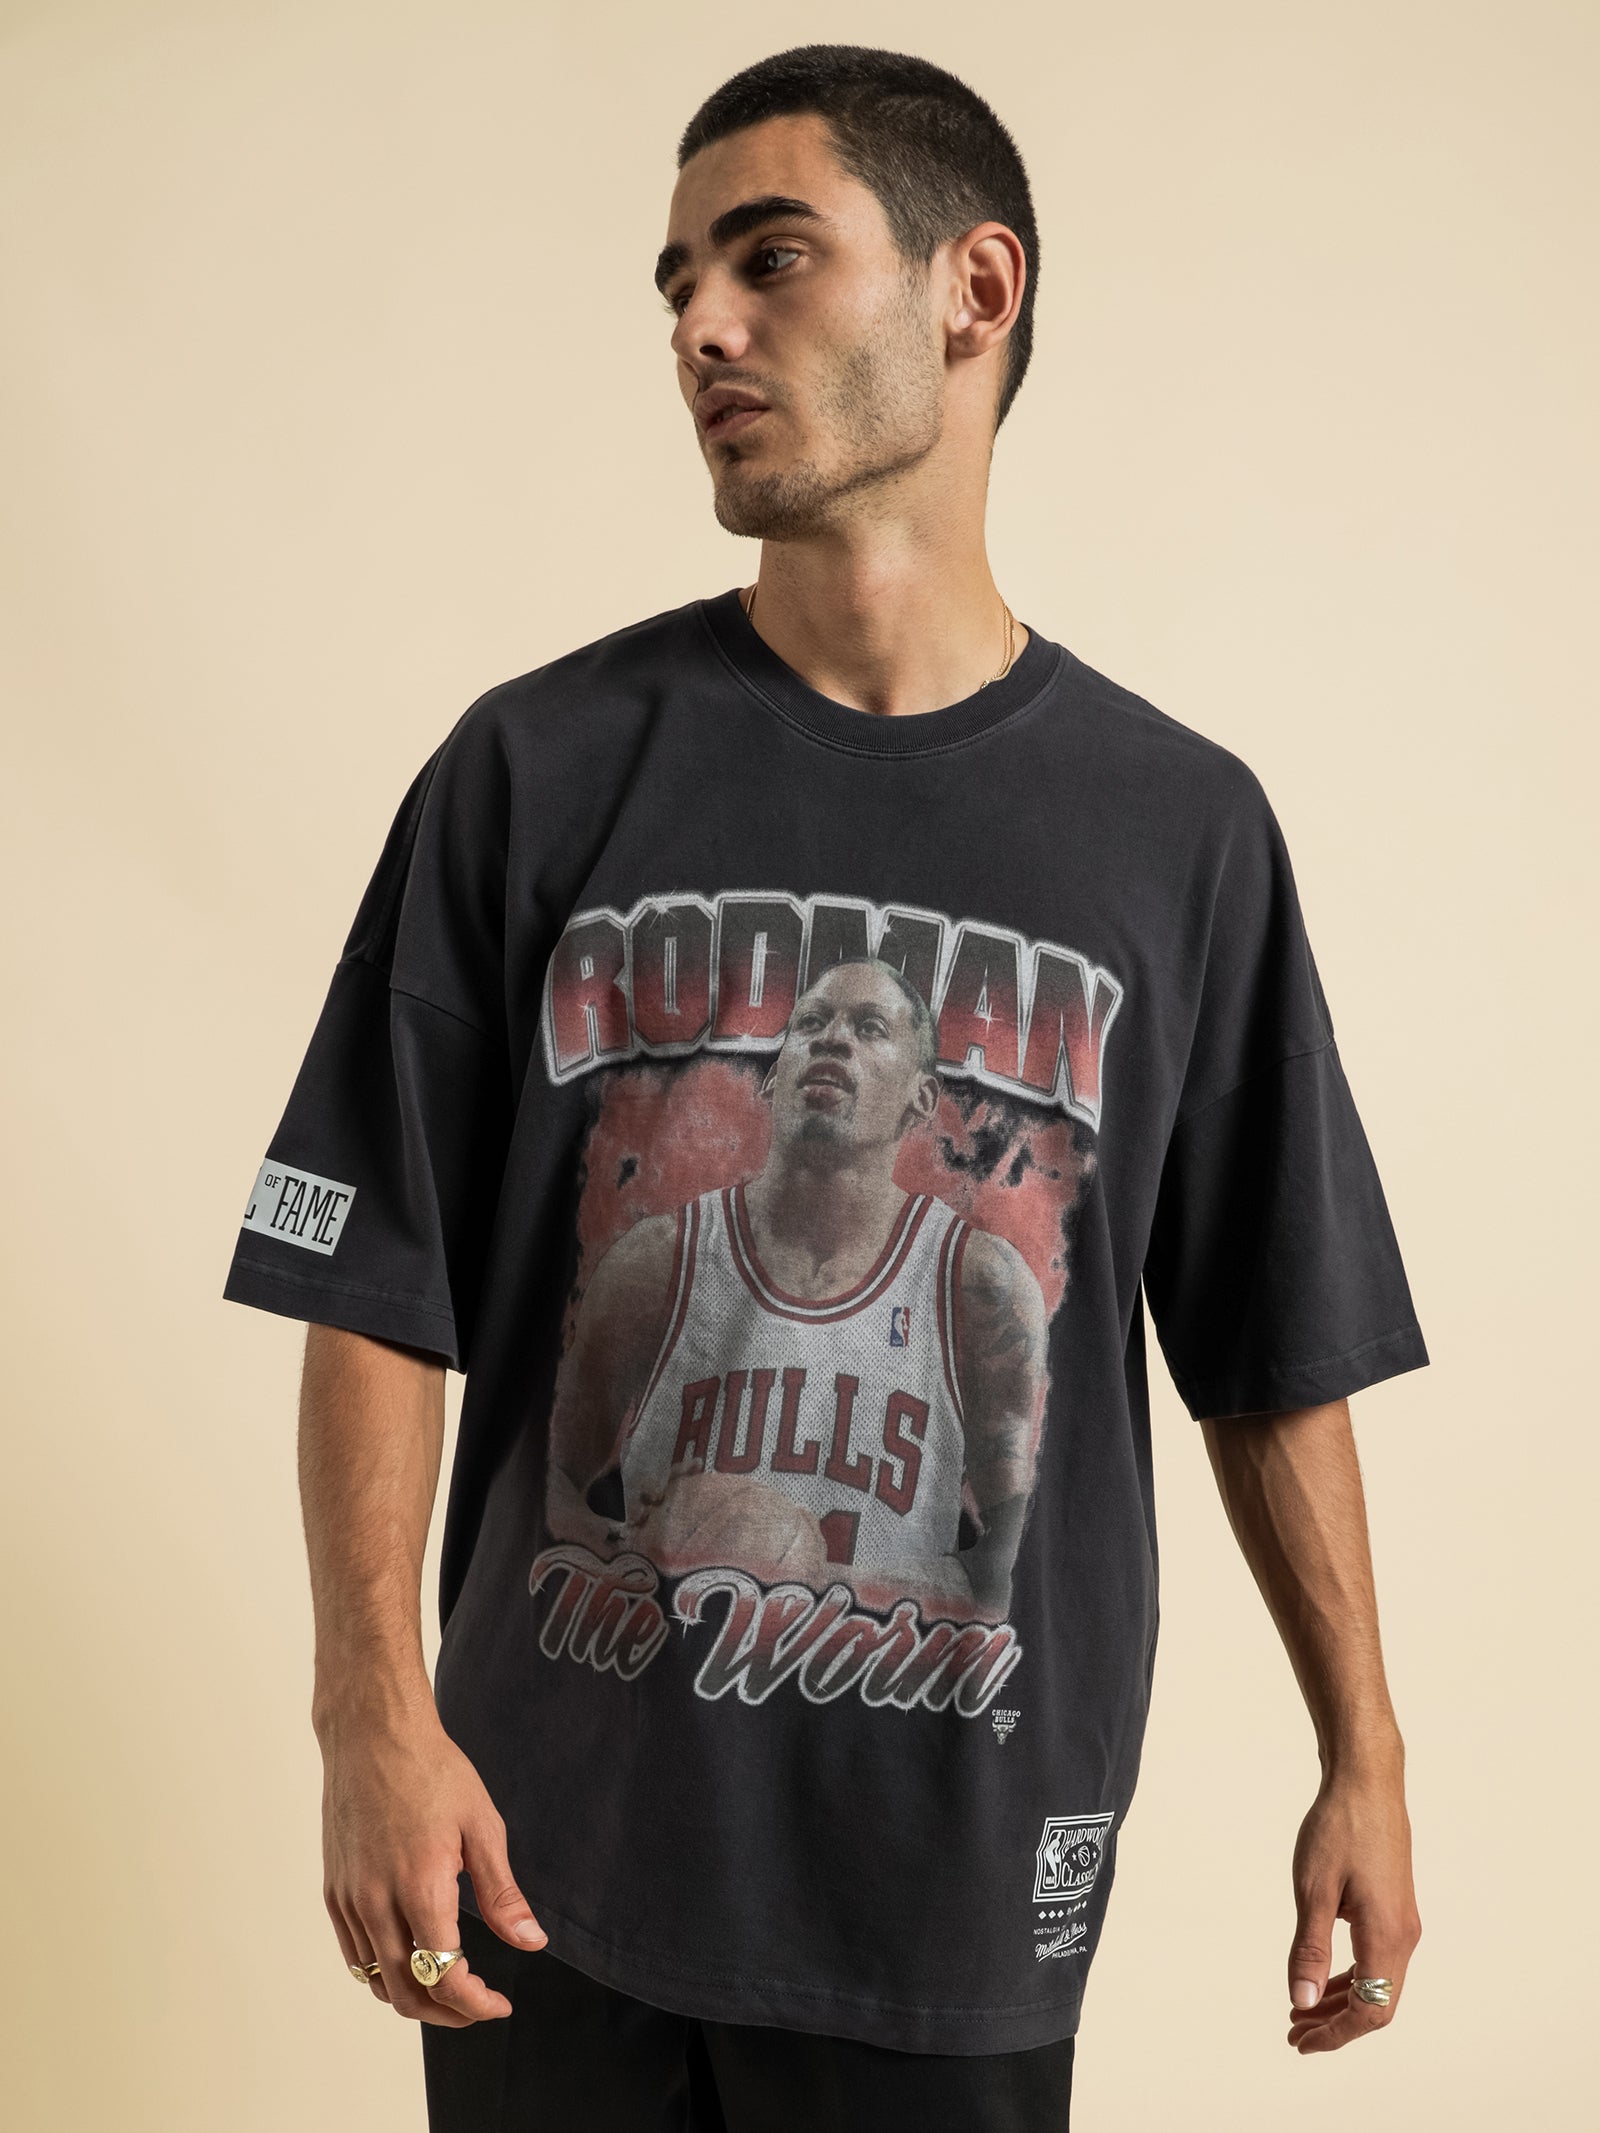 Fasttrack Your Dennis Rodman Shirt